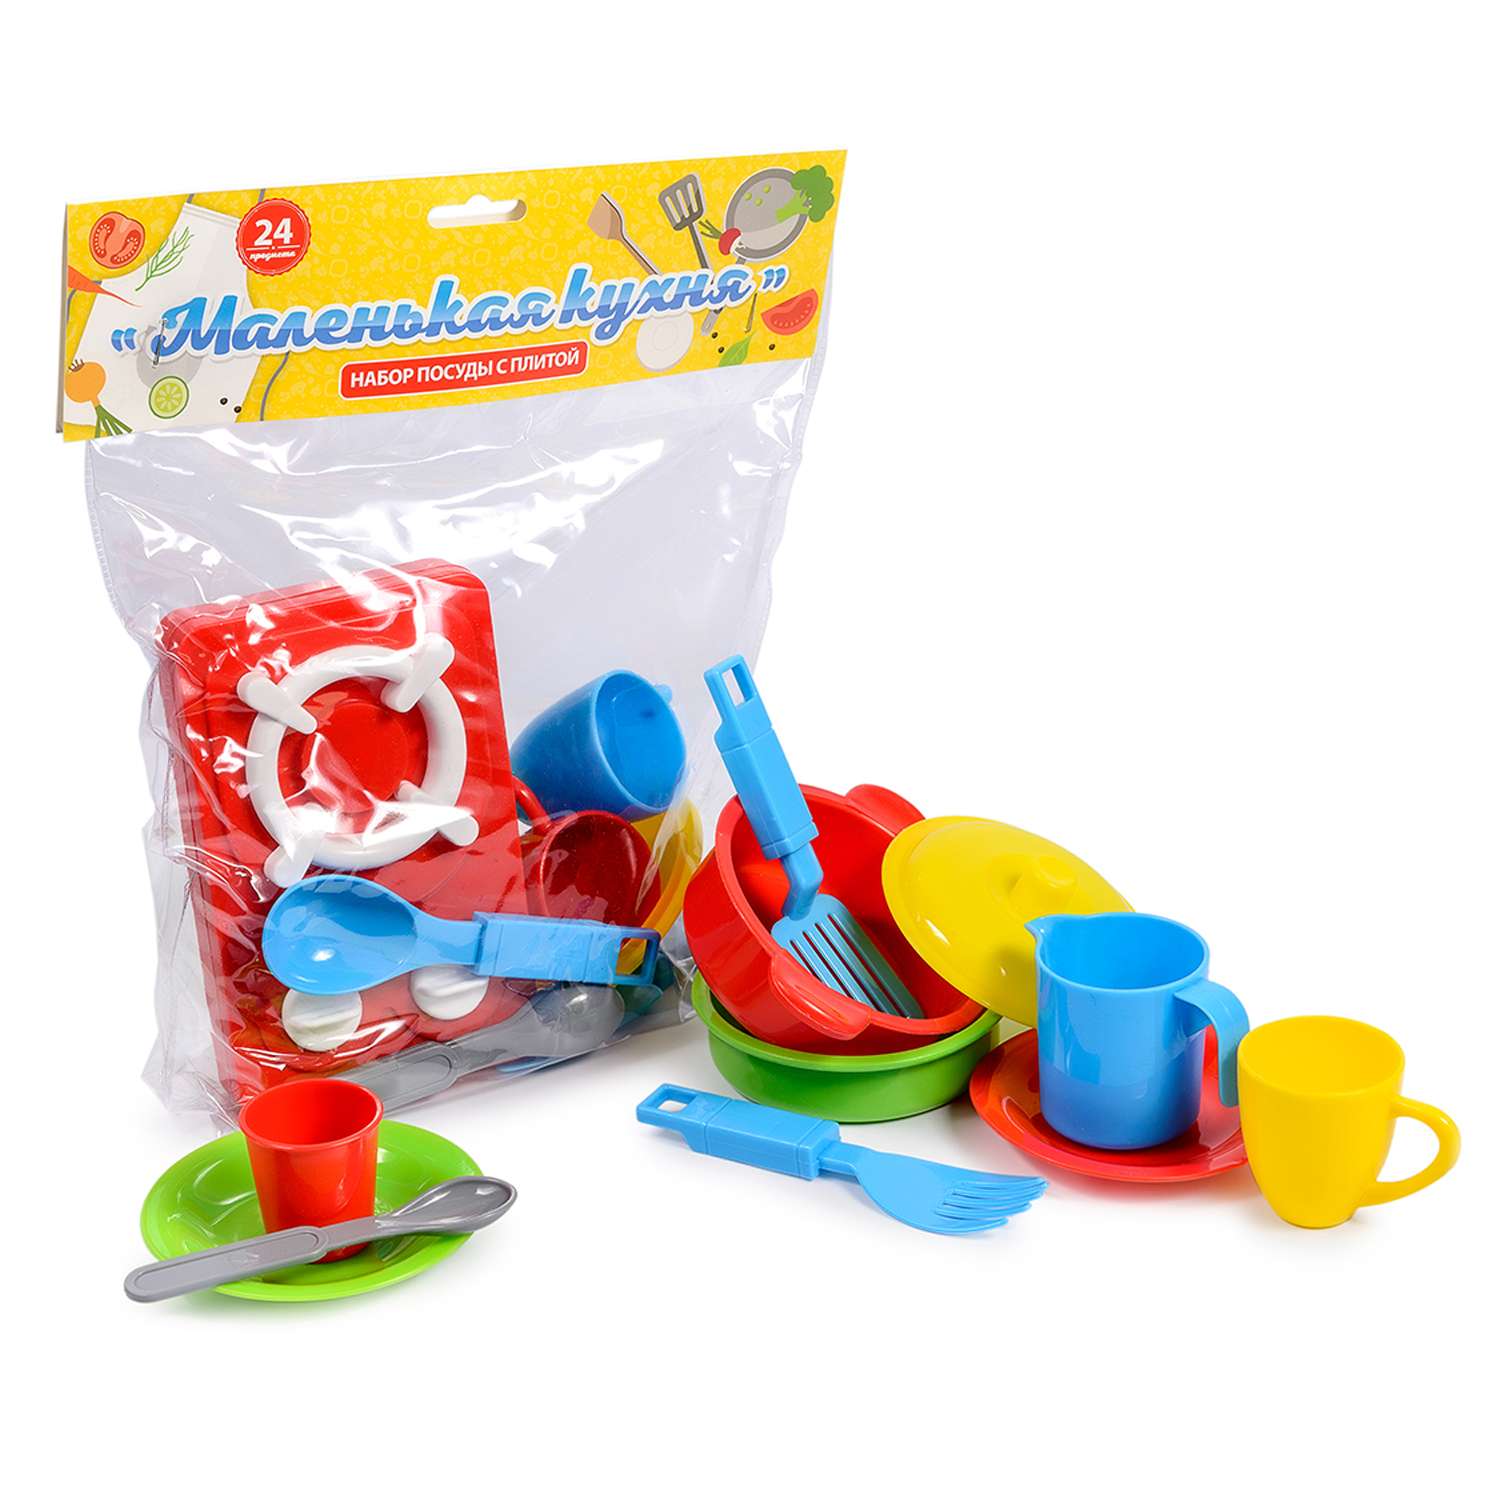 Игровой набор для кухни Green Plast детская игрушечная посудка с плитой 24 предмета - фото 2